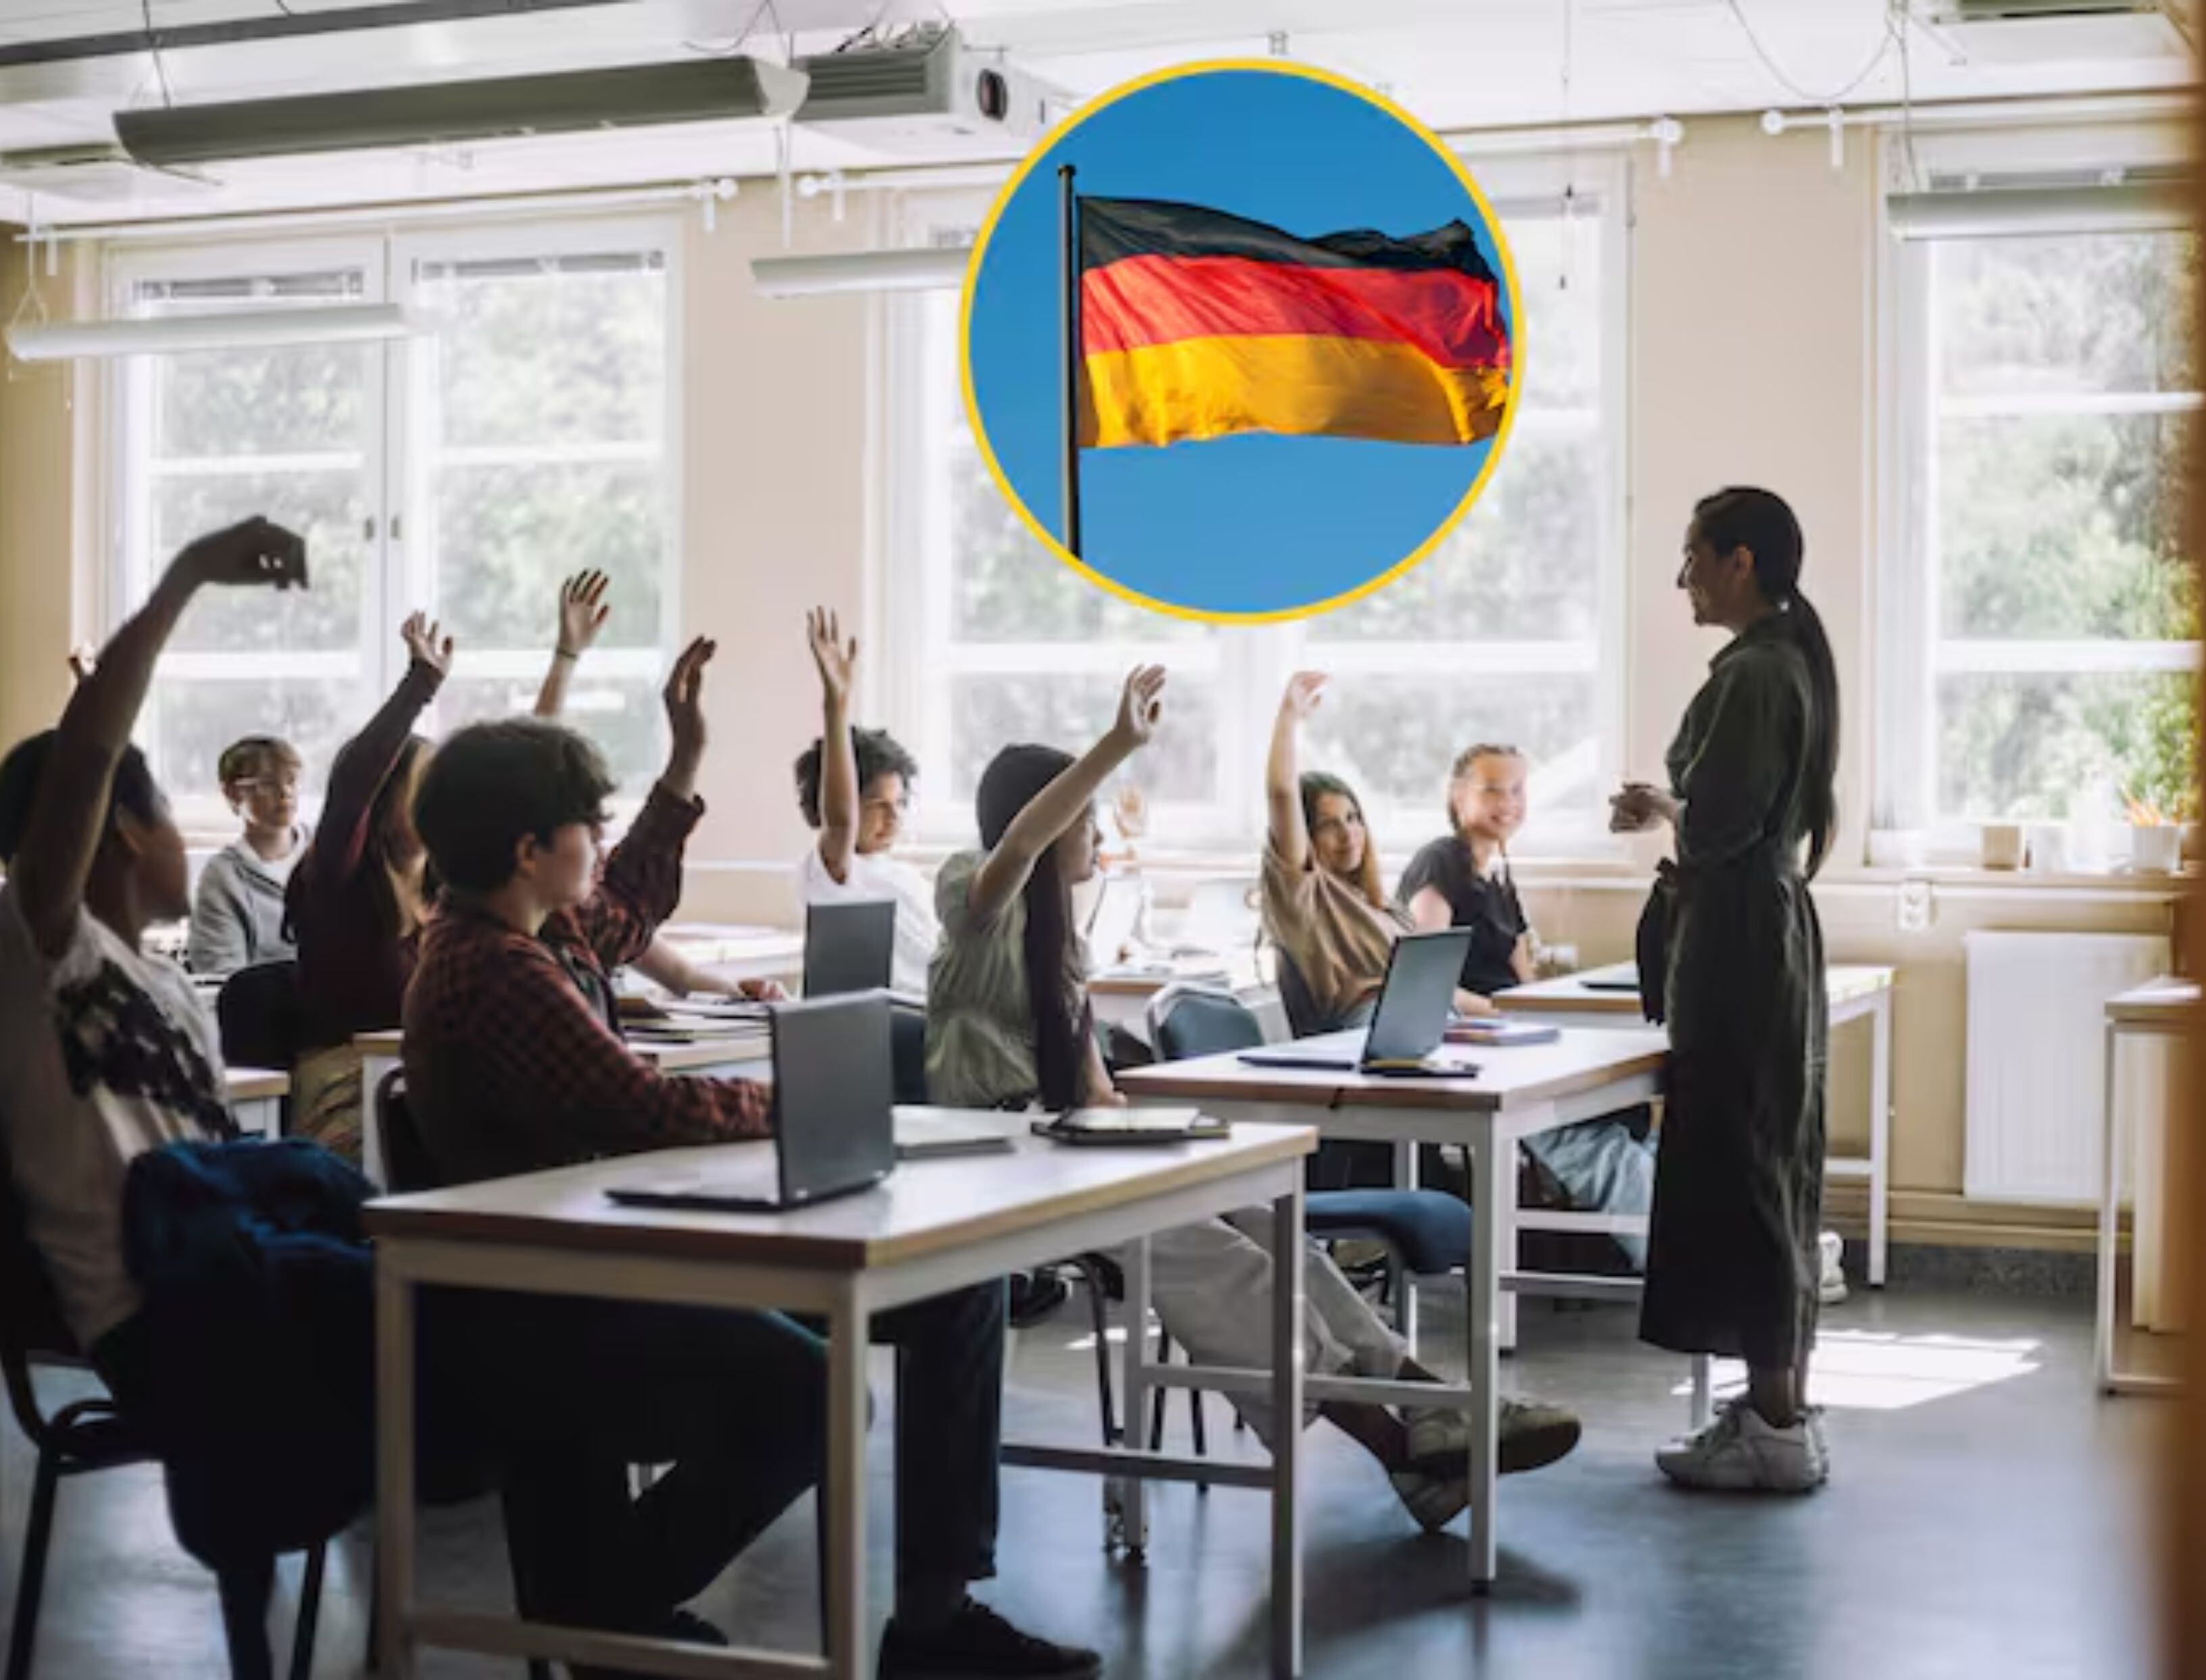 nueva convocatoria sena para trabajar en alemania: perfiles, beneficios y requisitos